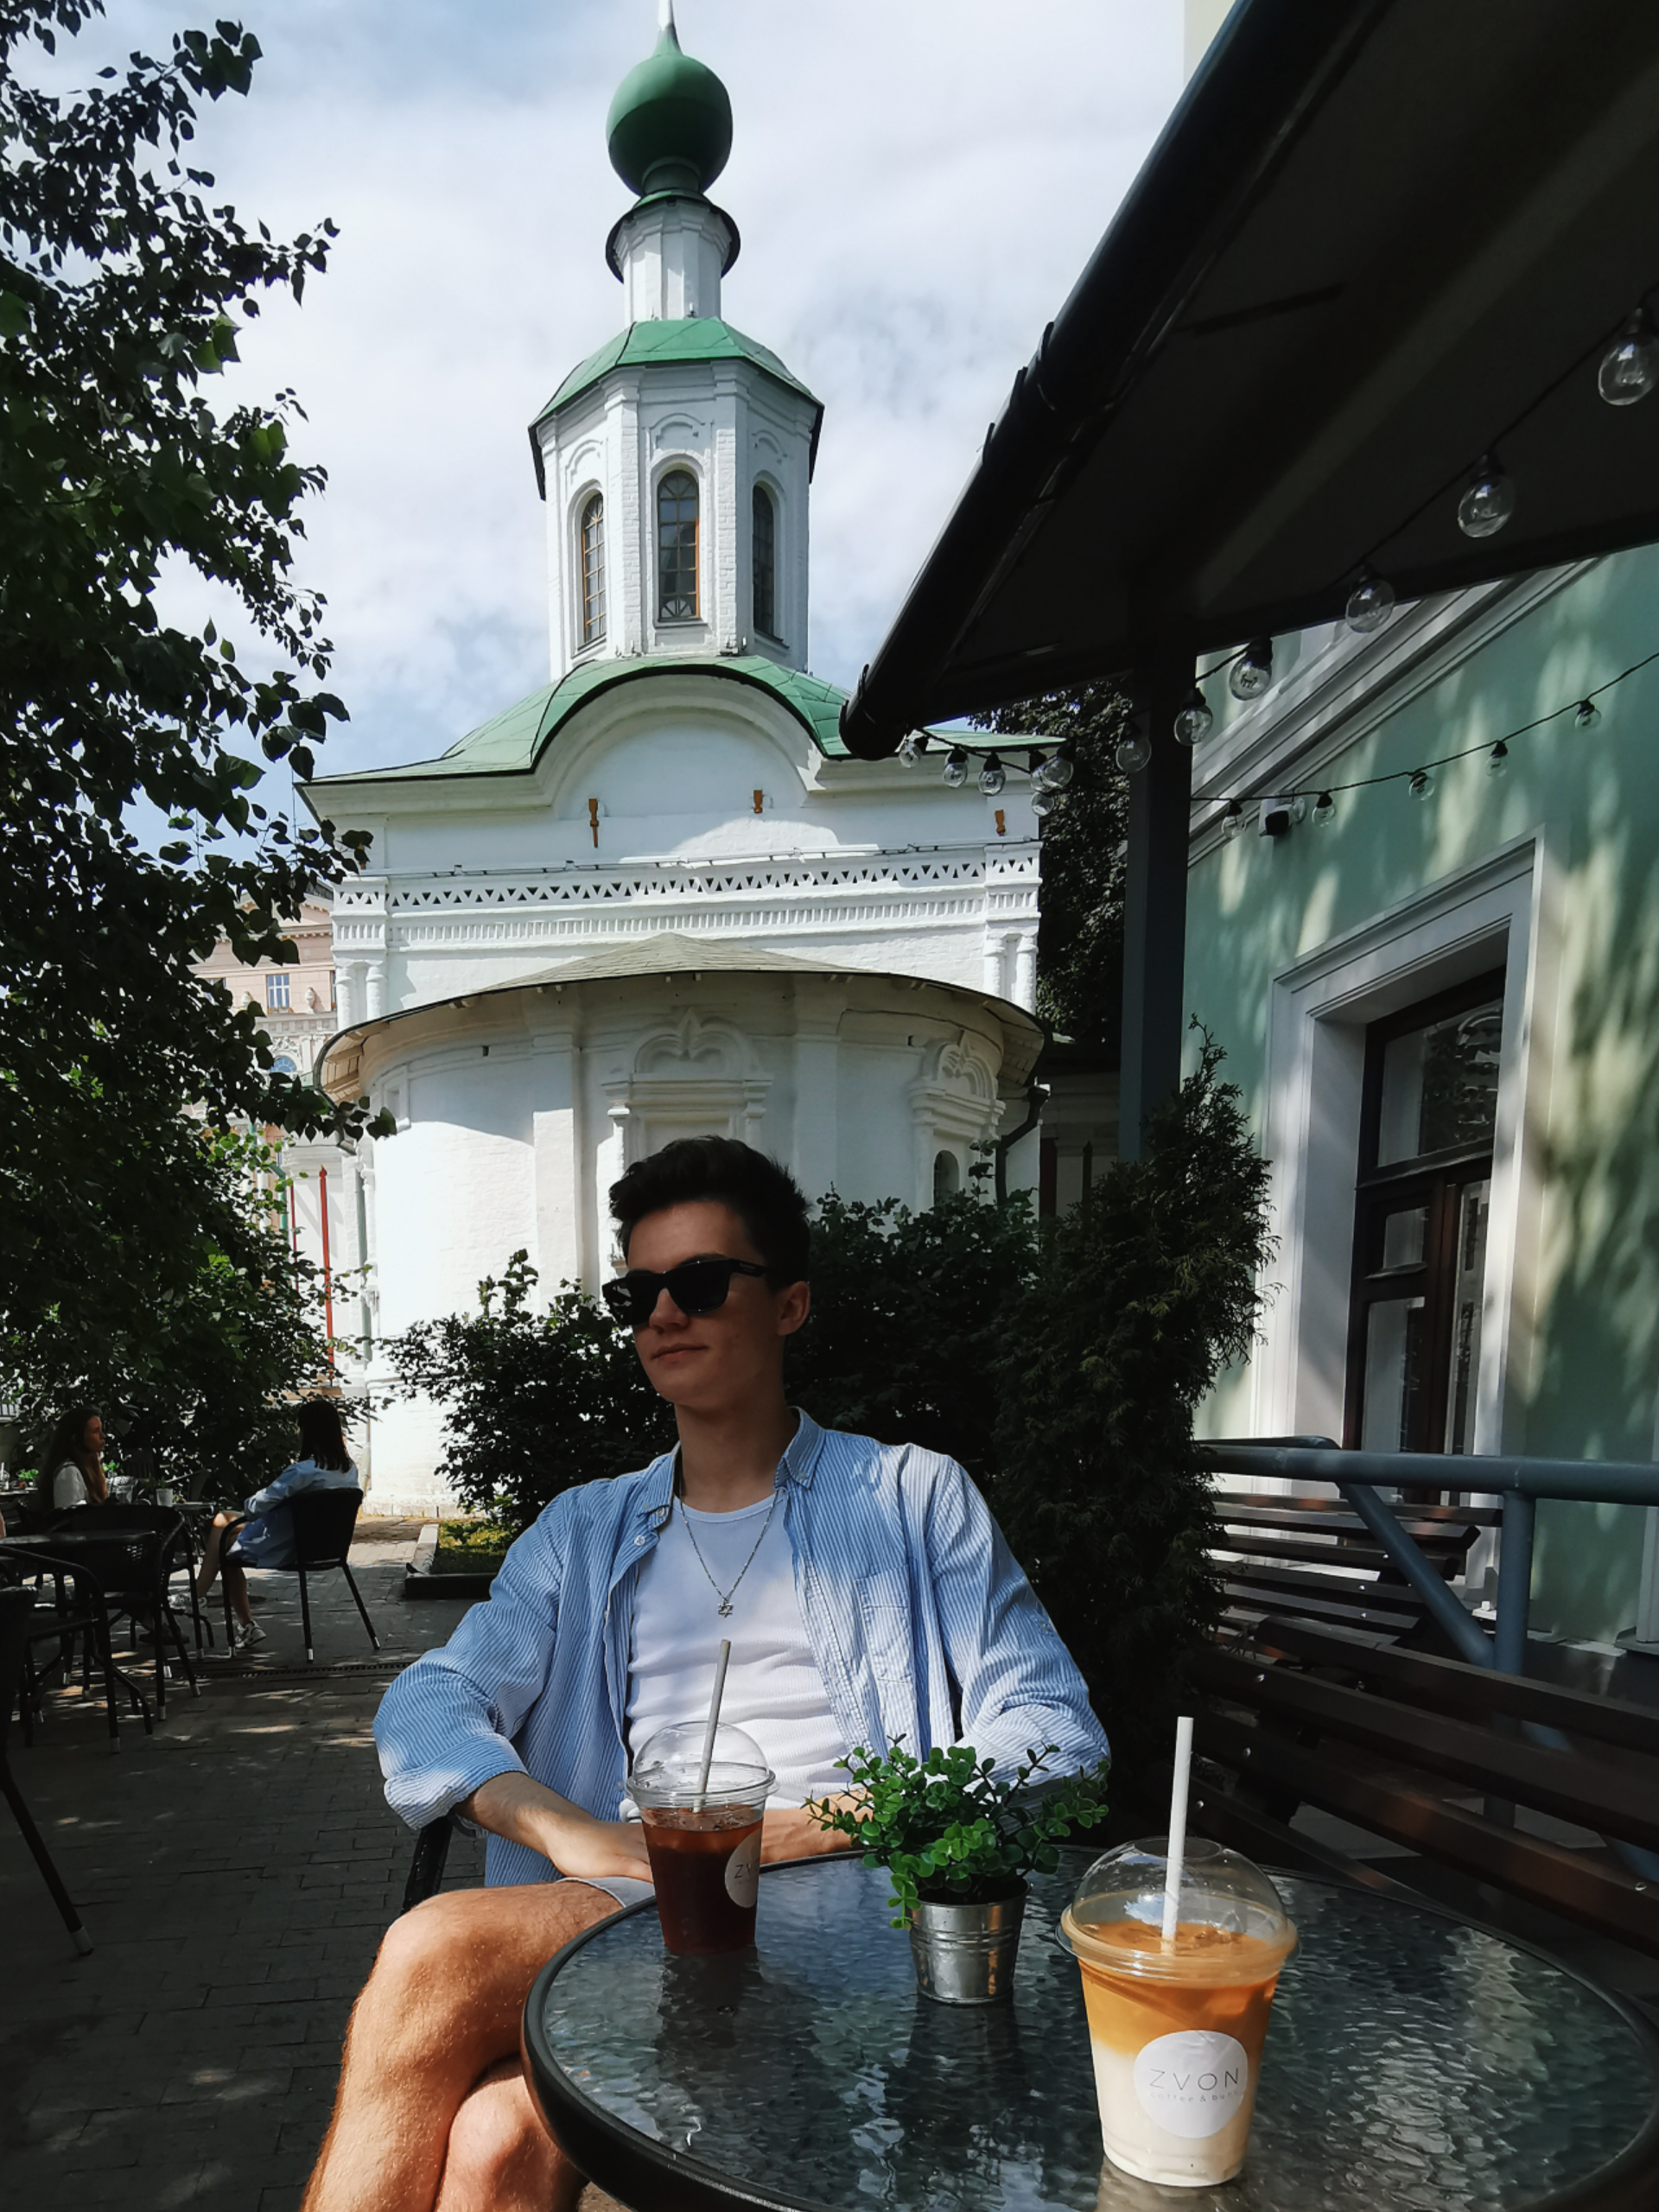 Церковная колокольня и модная кофейня. Как Москва соединяет религию и напитки2